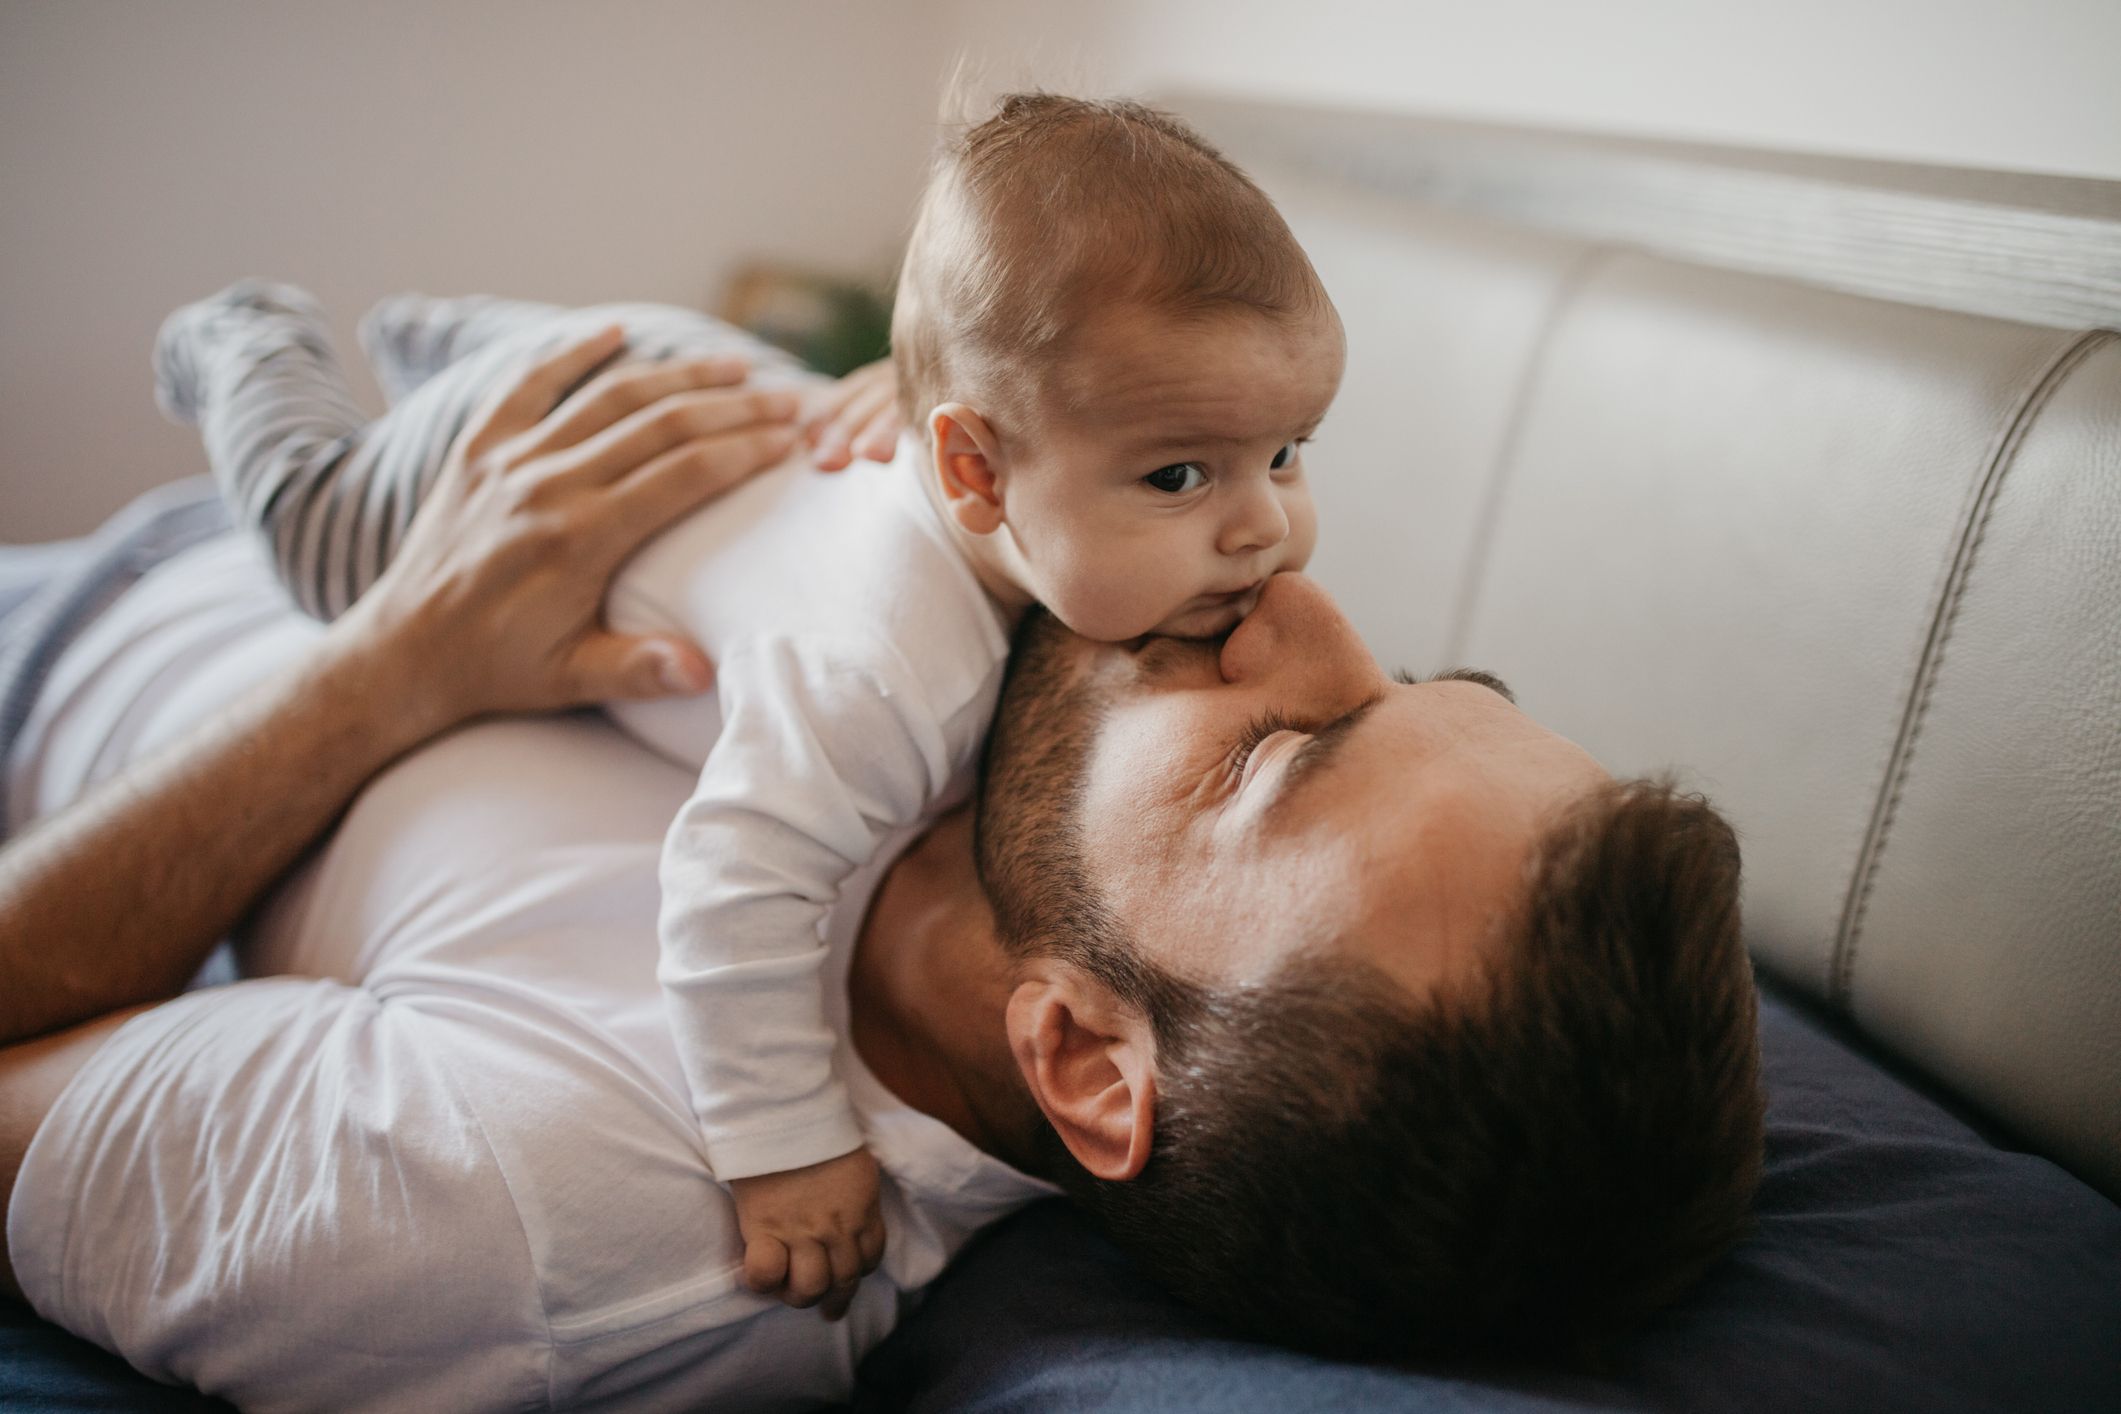 Padre primerizo! 18 consejos para los nuevos papás